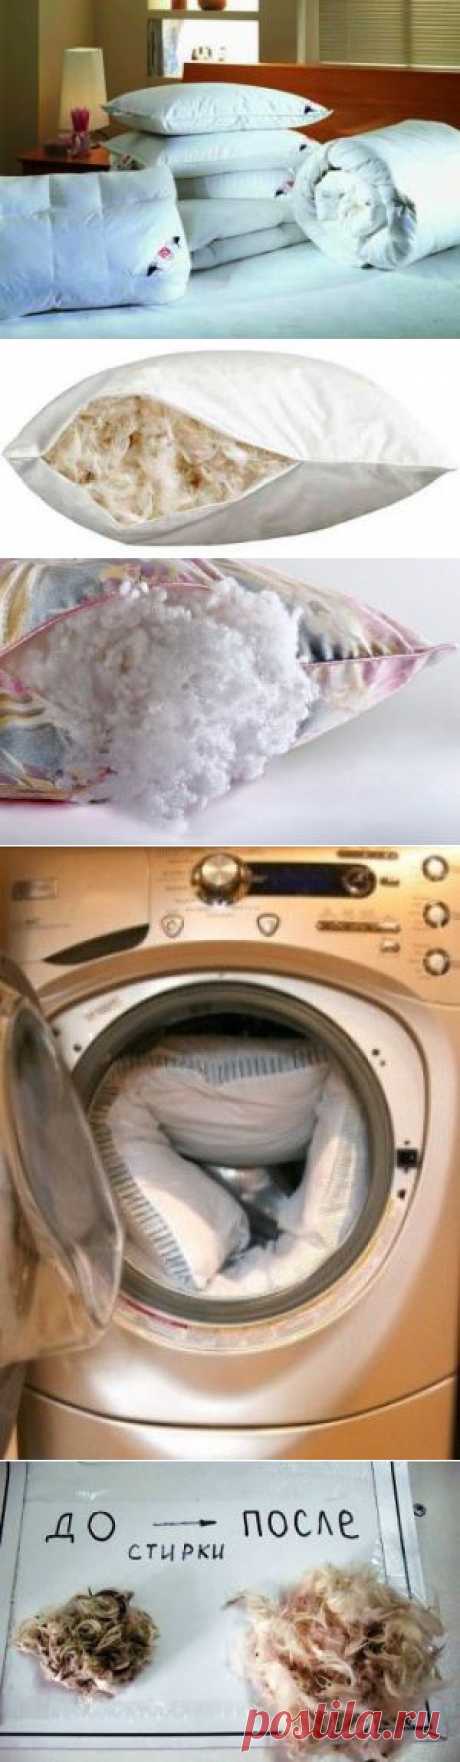 Как чистить подушки | МОЙ ДОМ